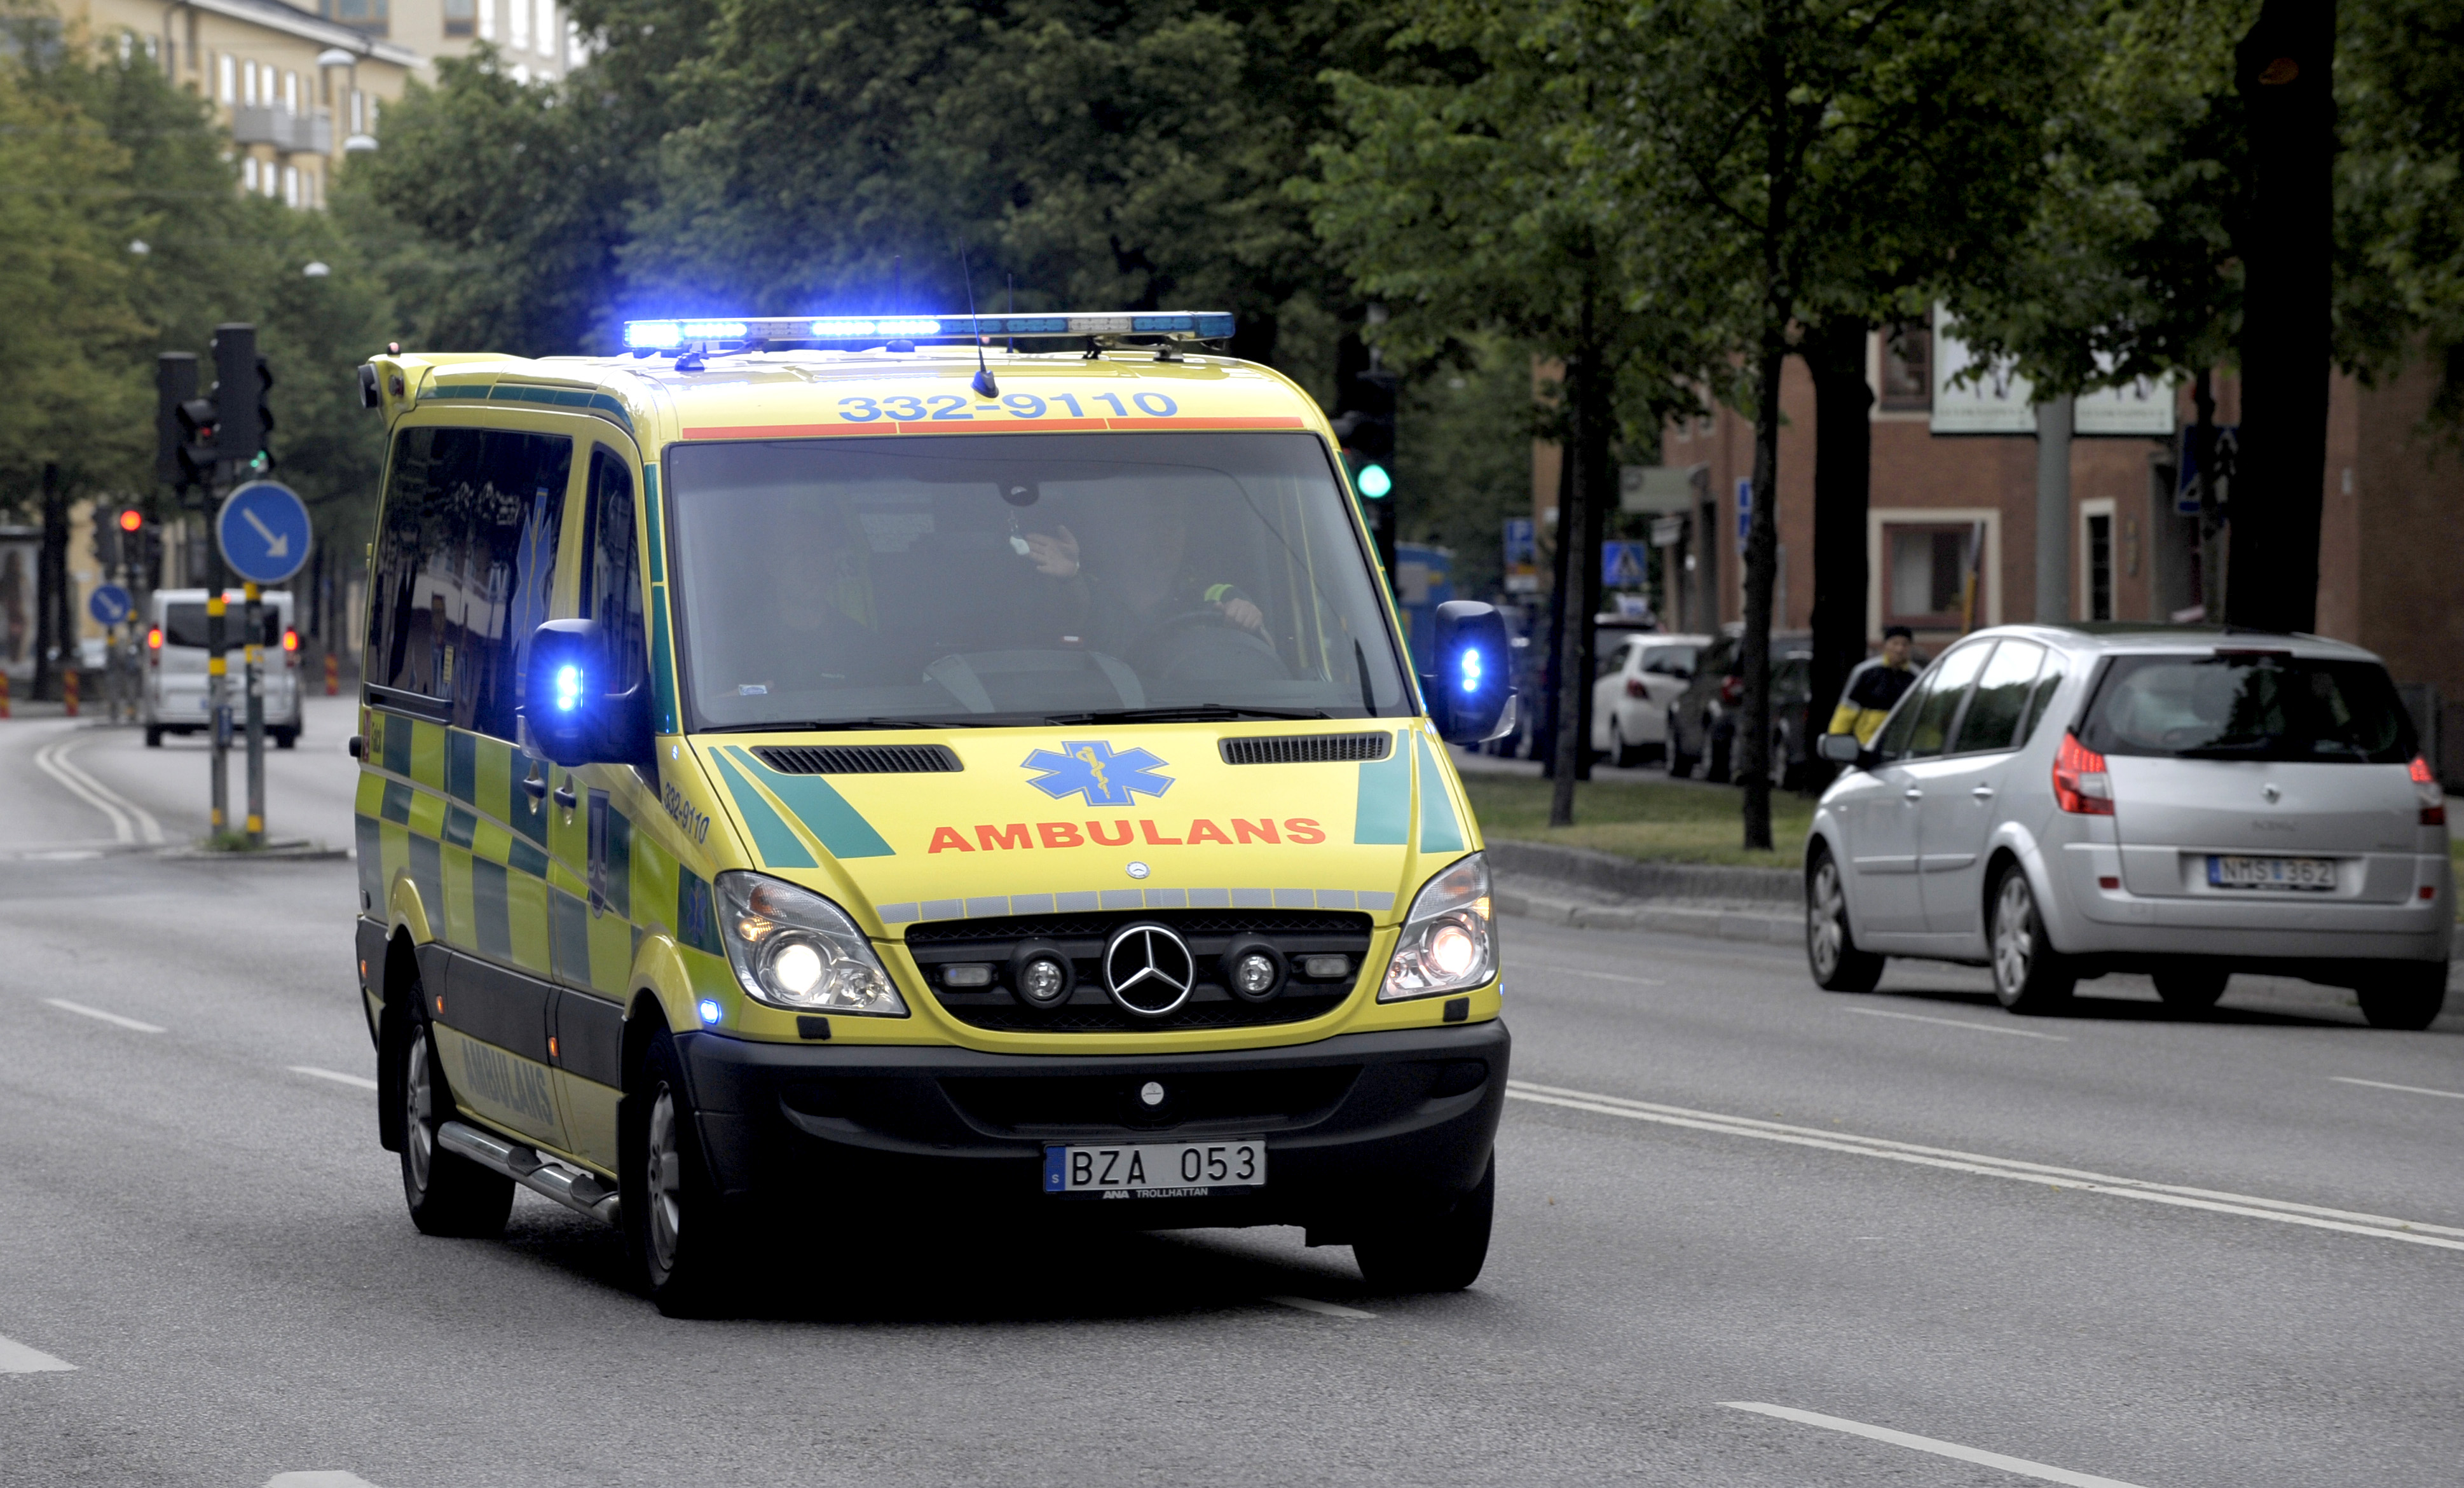 Den medvetslöse mannen vaknade till liv och stal ambulansen. Ambulansen på bilden är svensk och har inget med händelsen att göra.